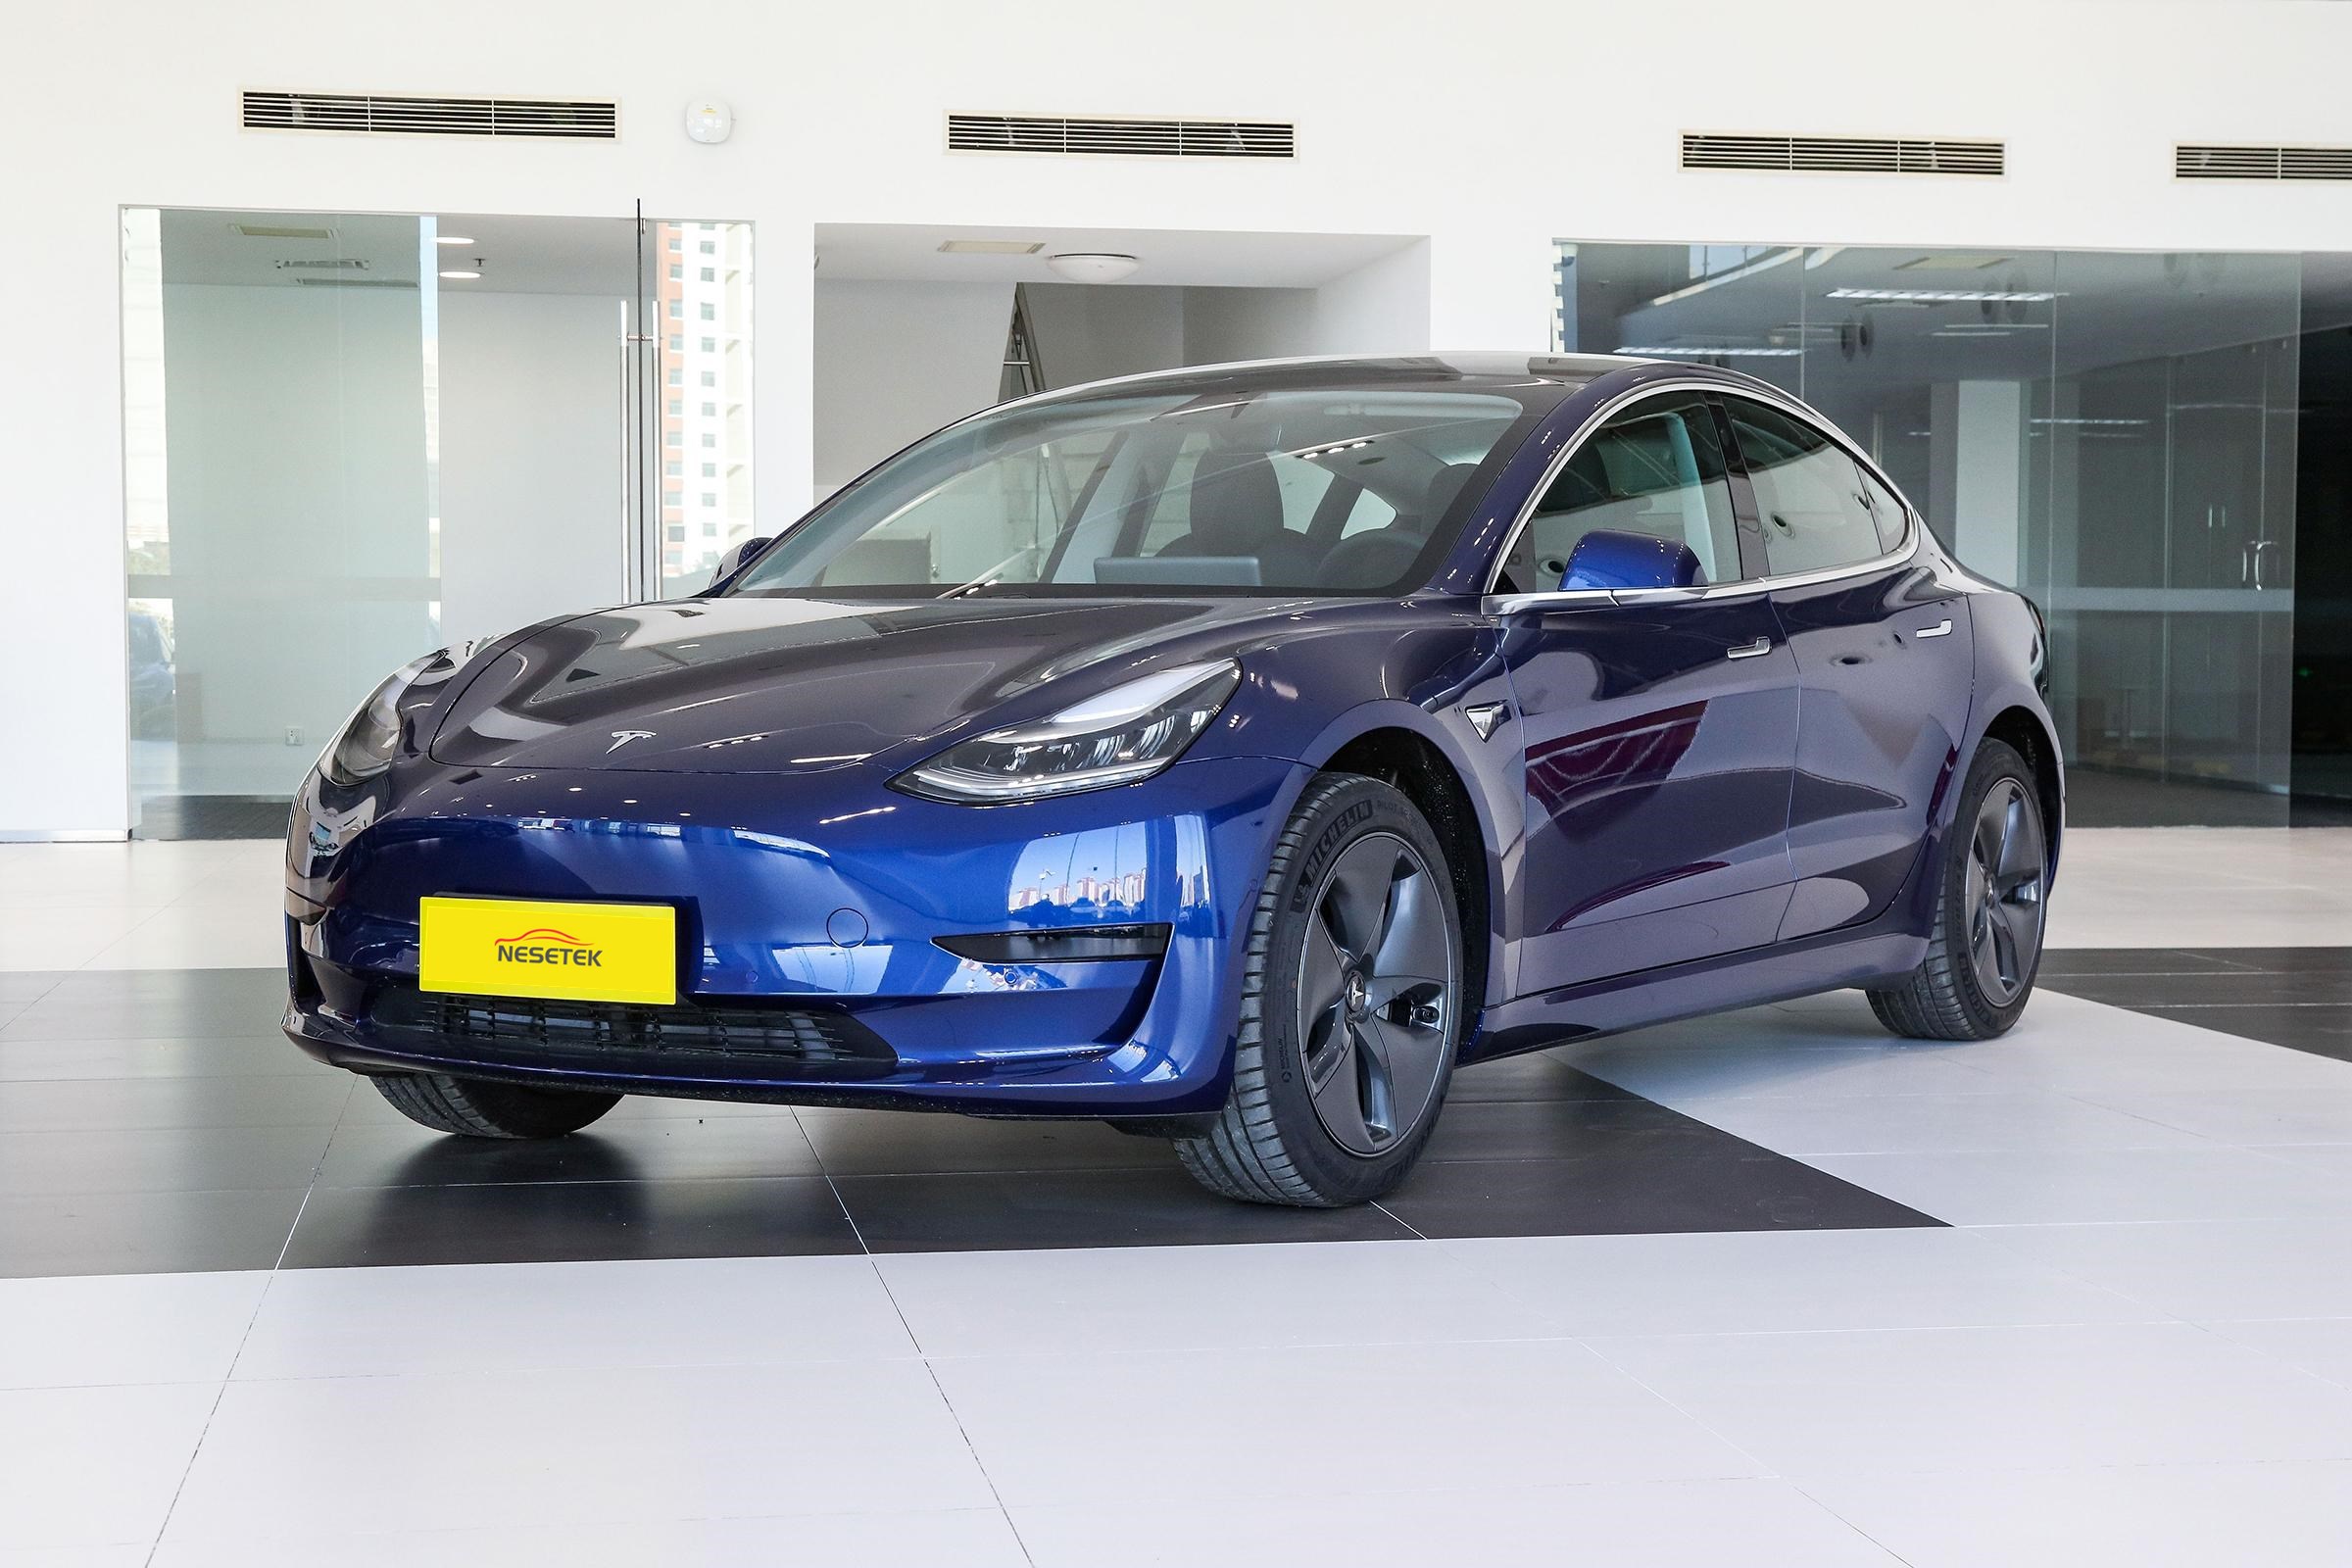 2023 Novo carro elétrico Tesla modelo 3 Compre veículo EV de fábrica na China Preço competitivo barato